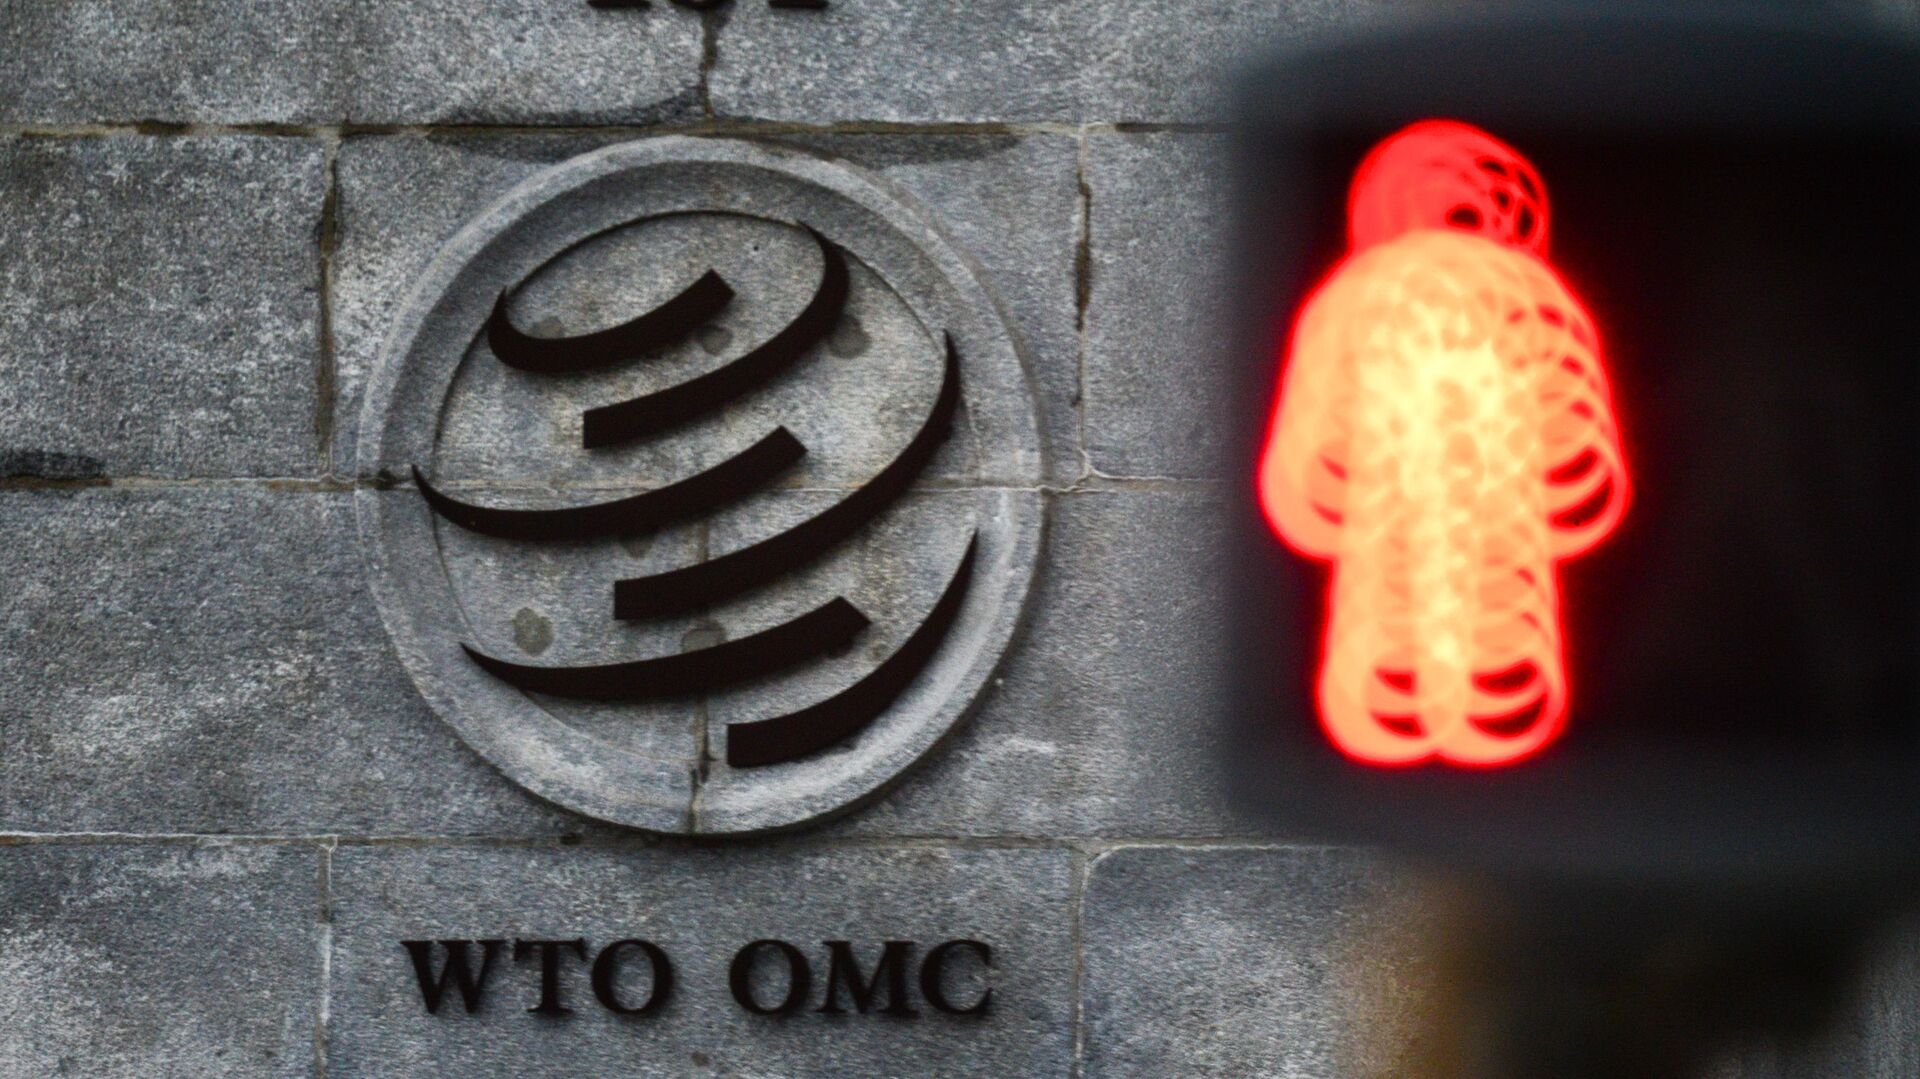 Эмблема Всемирной торговой организации (ВТО) возле здания штаб-квартиры организации в Женеве - Sputnik Узбекистан, 1920, 23.02.2021